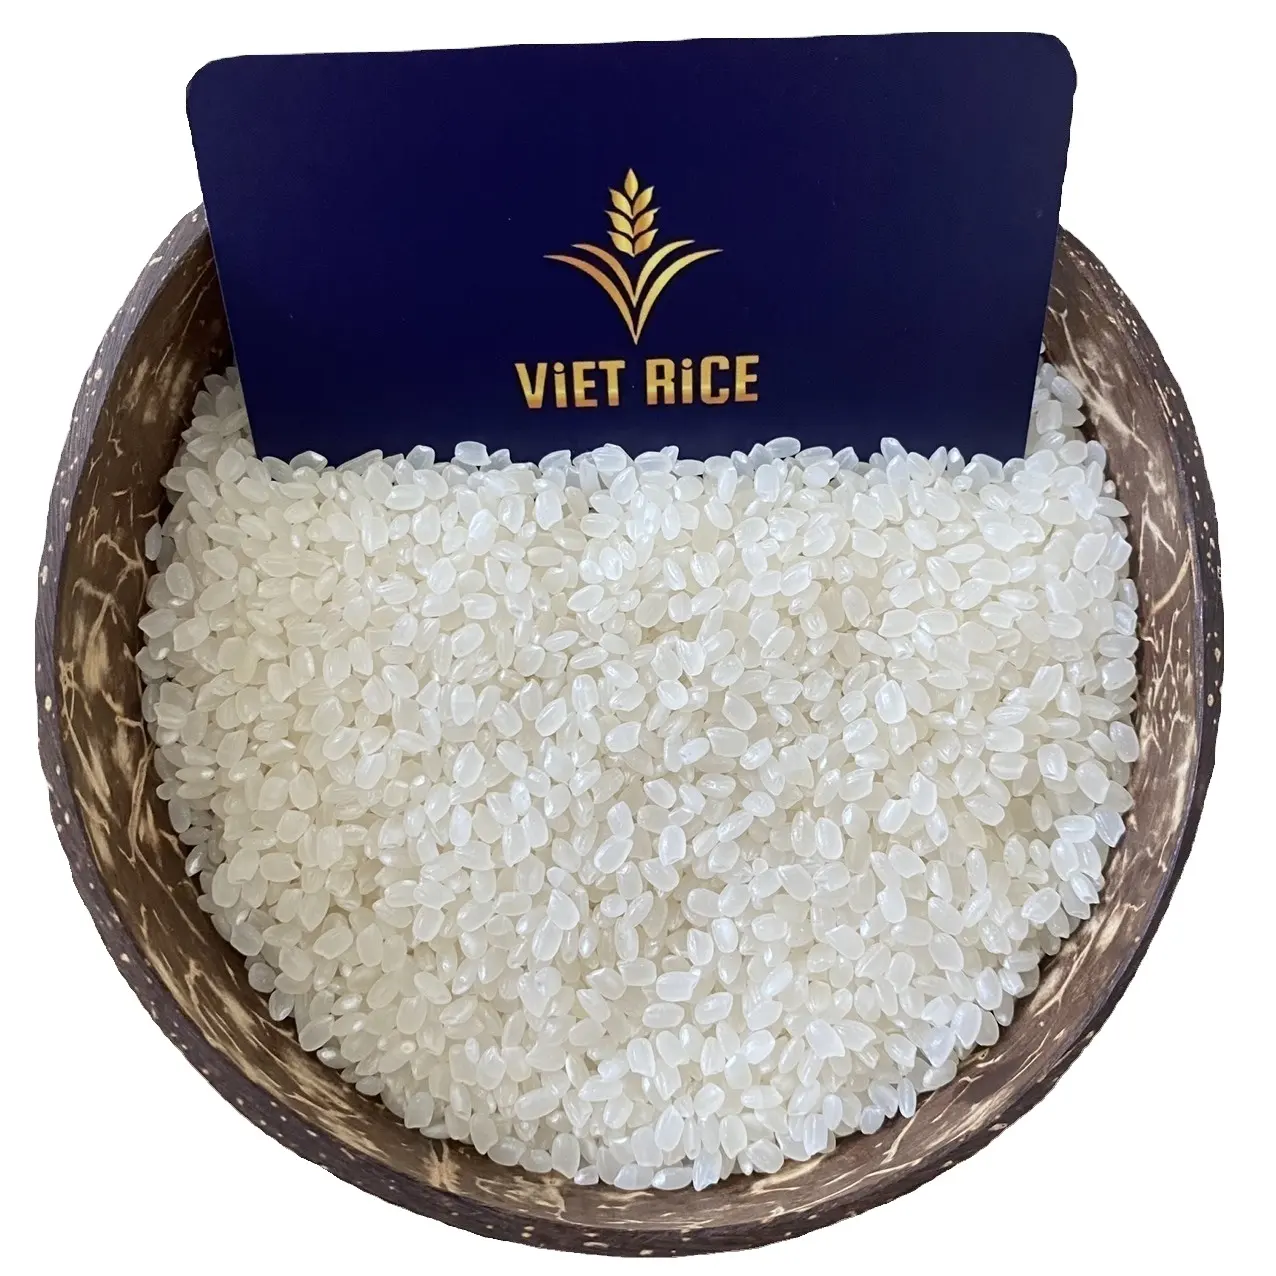 Gạo Japonica trắng tròn chuyên làm sushi trong các nhà hàng cao cấp-Bán chạy nhất trên thị trường gạo toàn cầu